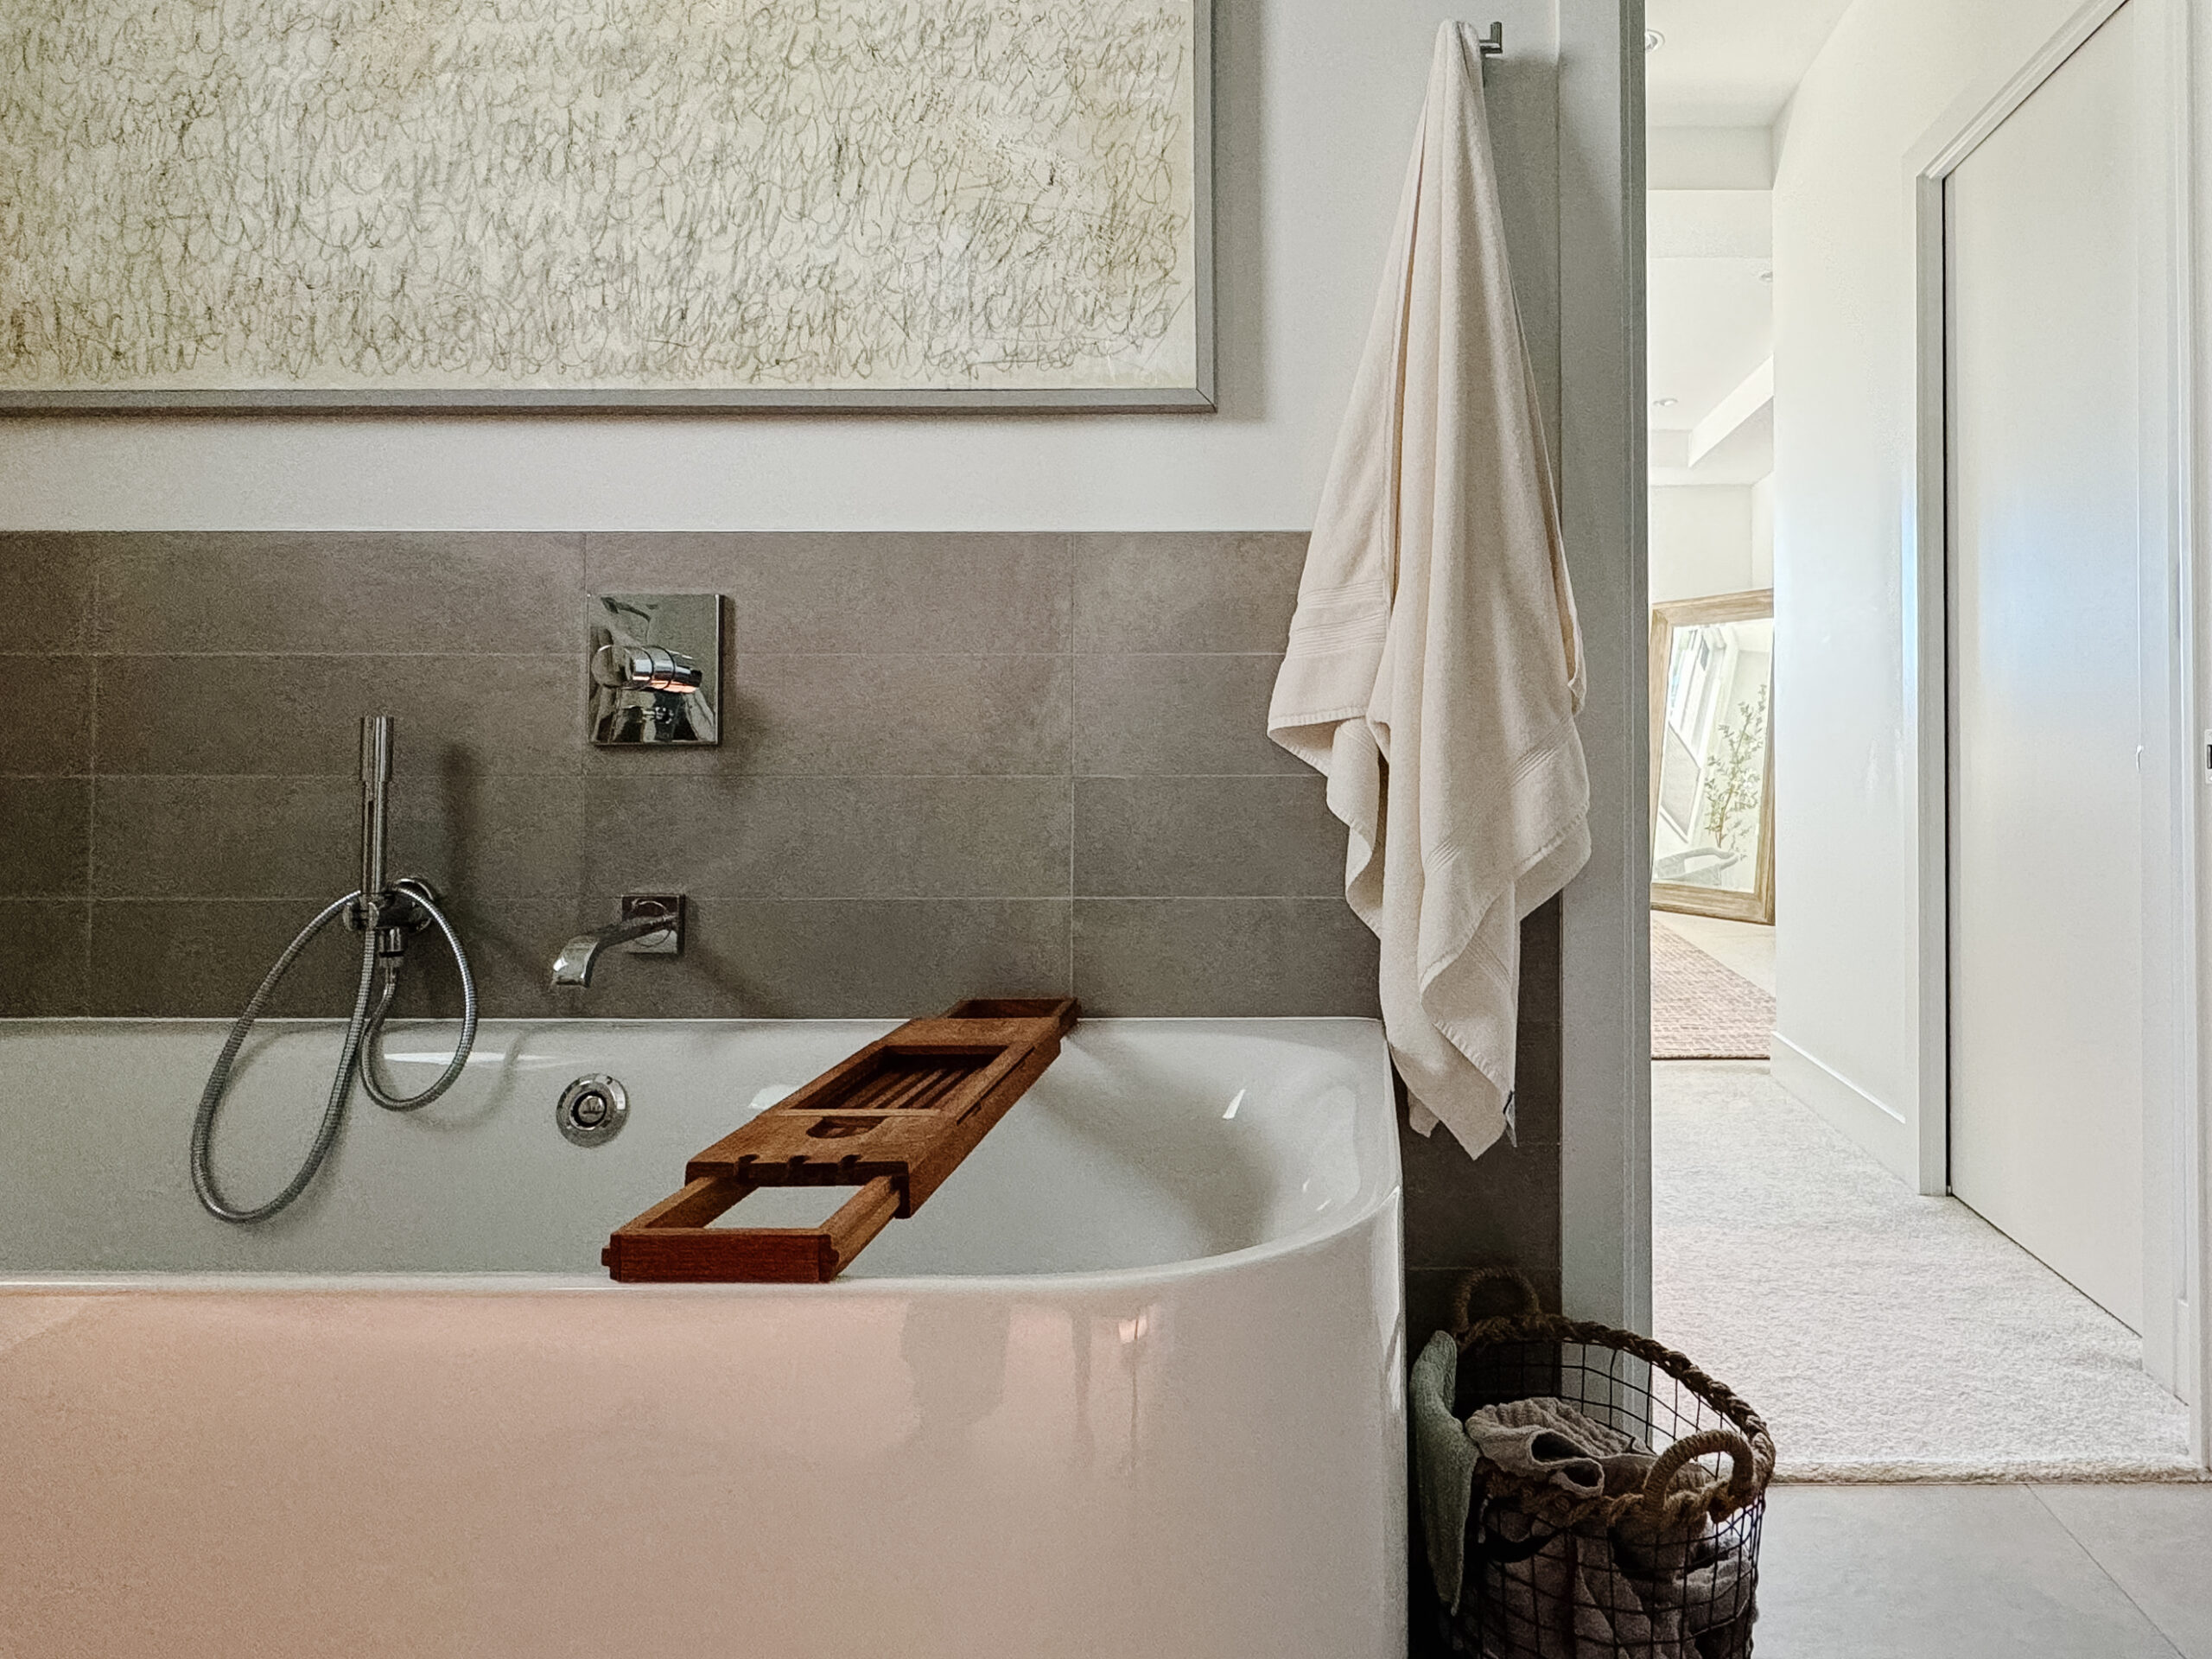 Luxury bathroom ideas. Super fluffy towel hanging by a tub